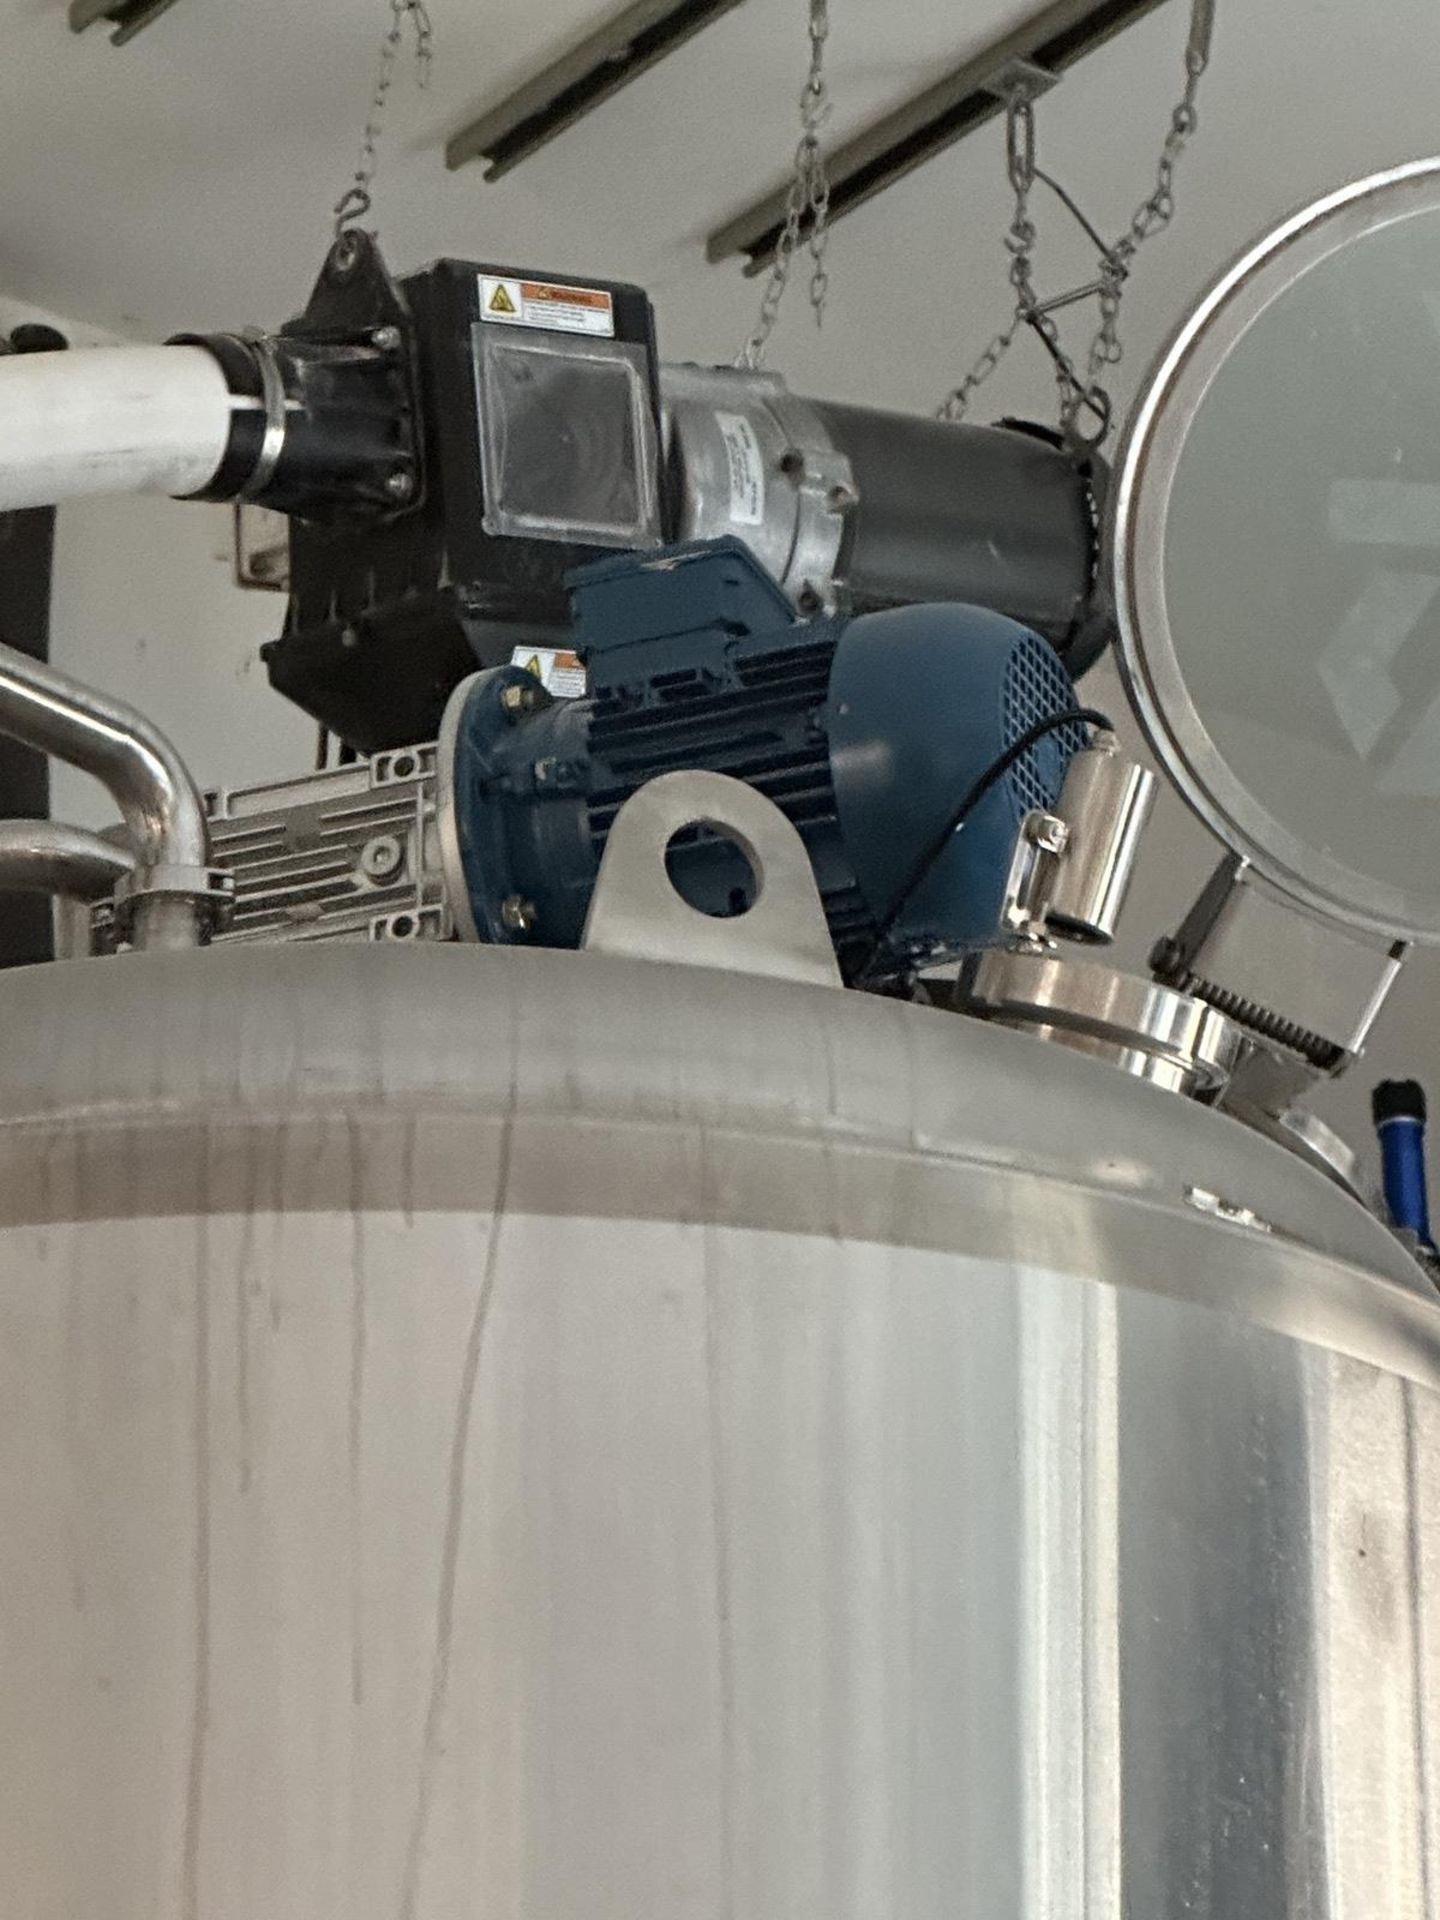 2019 Standard Kegs LLC 5 BBL 2 Vessel Brewhouse Including Pump, Mash/Lauter + HLT V | Rig Fee $3000 - Image 14 of 18